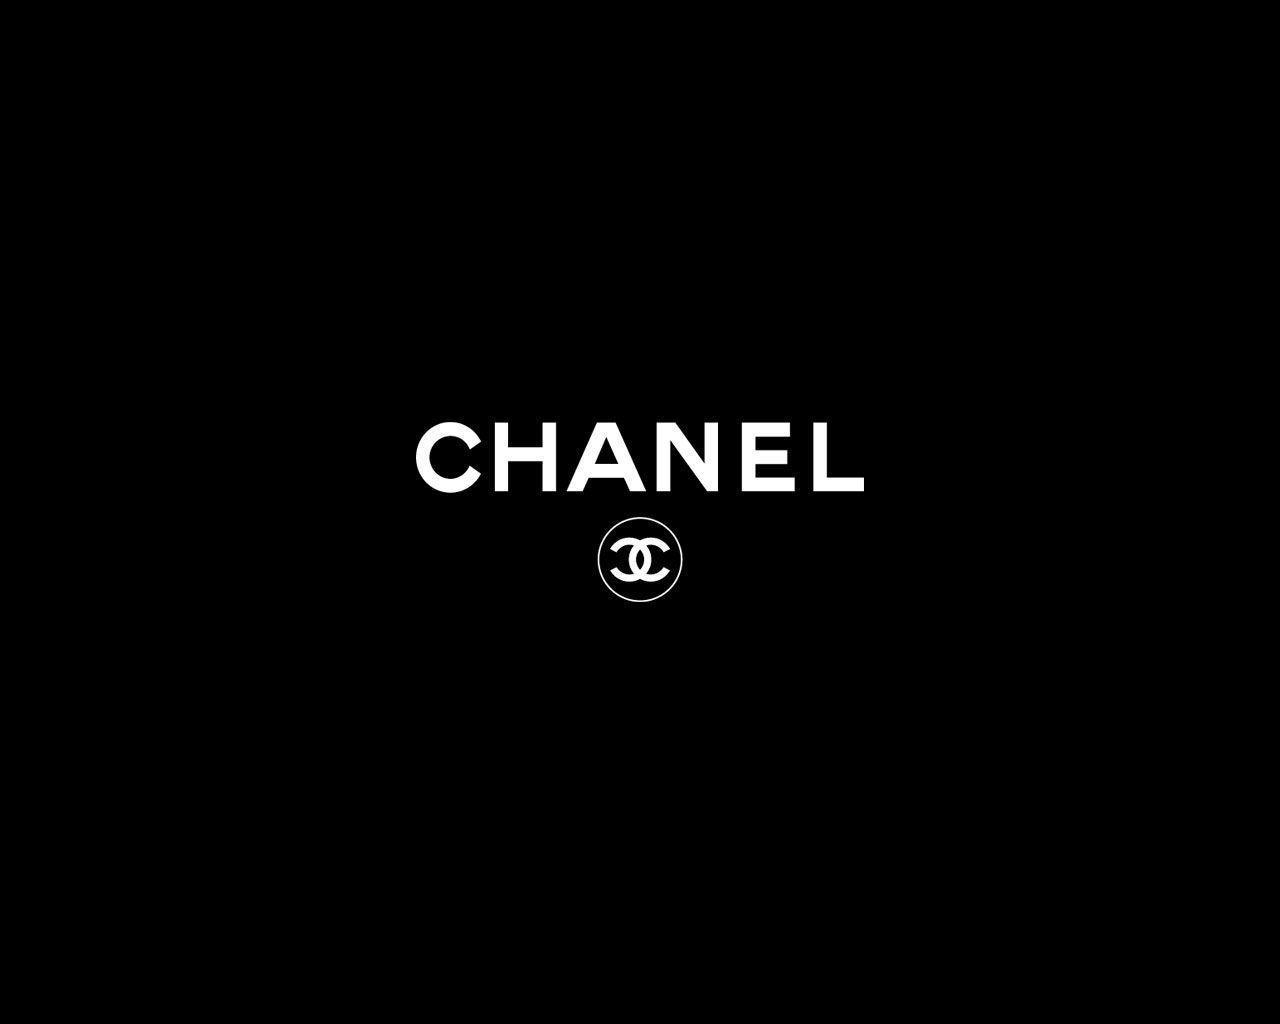 Wallpaper For > Chanel Logo Wallpaper